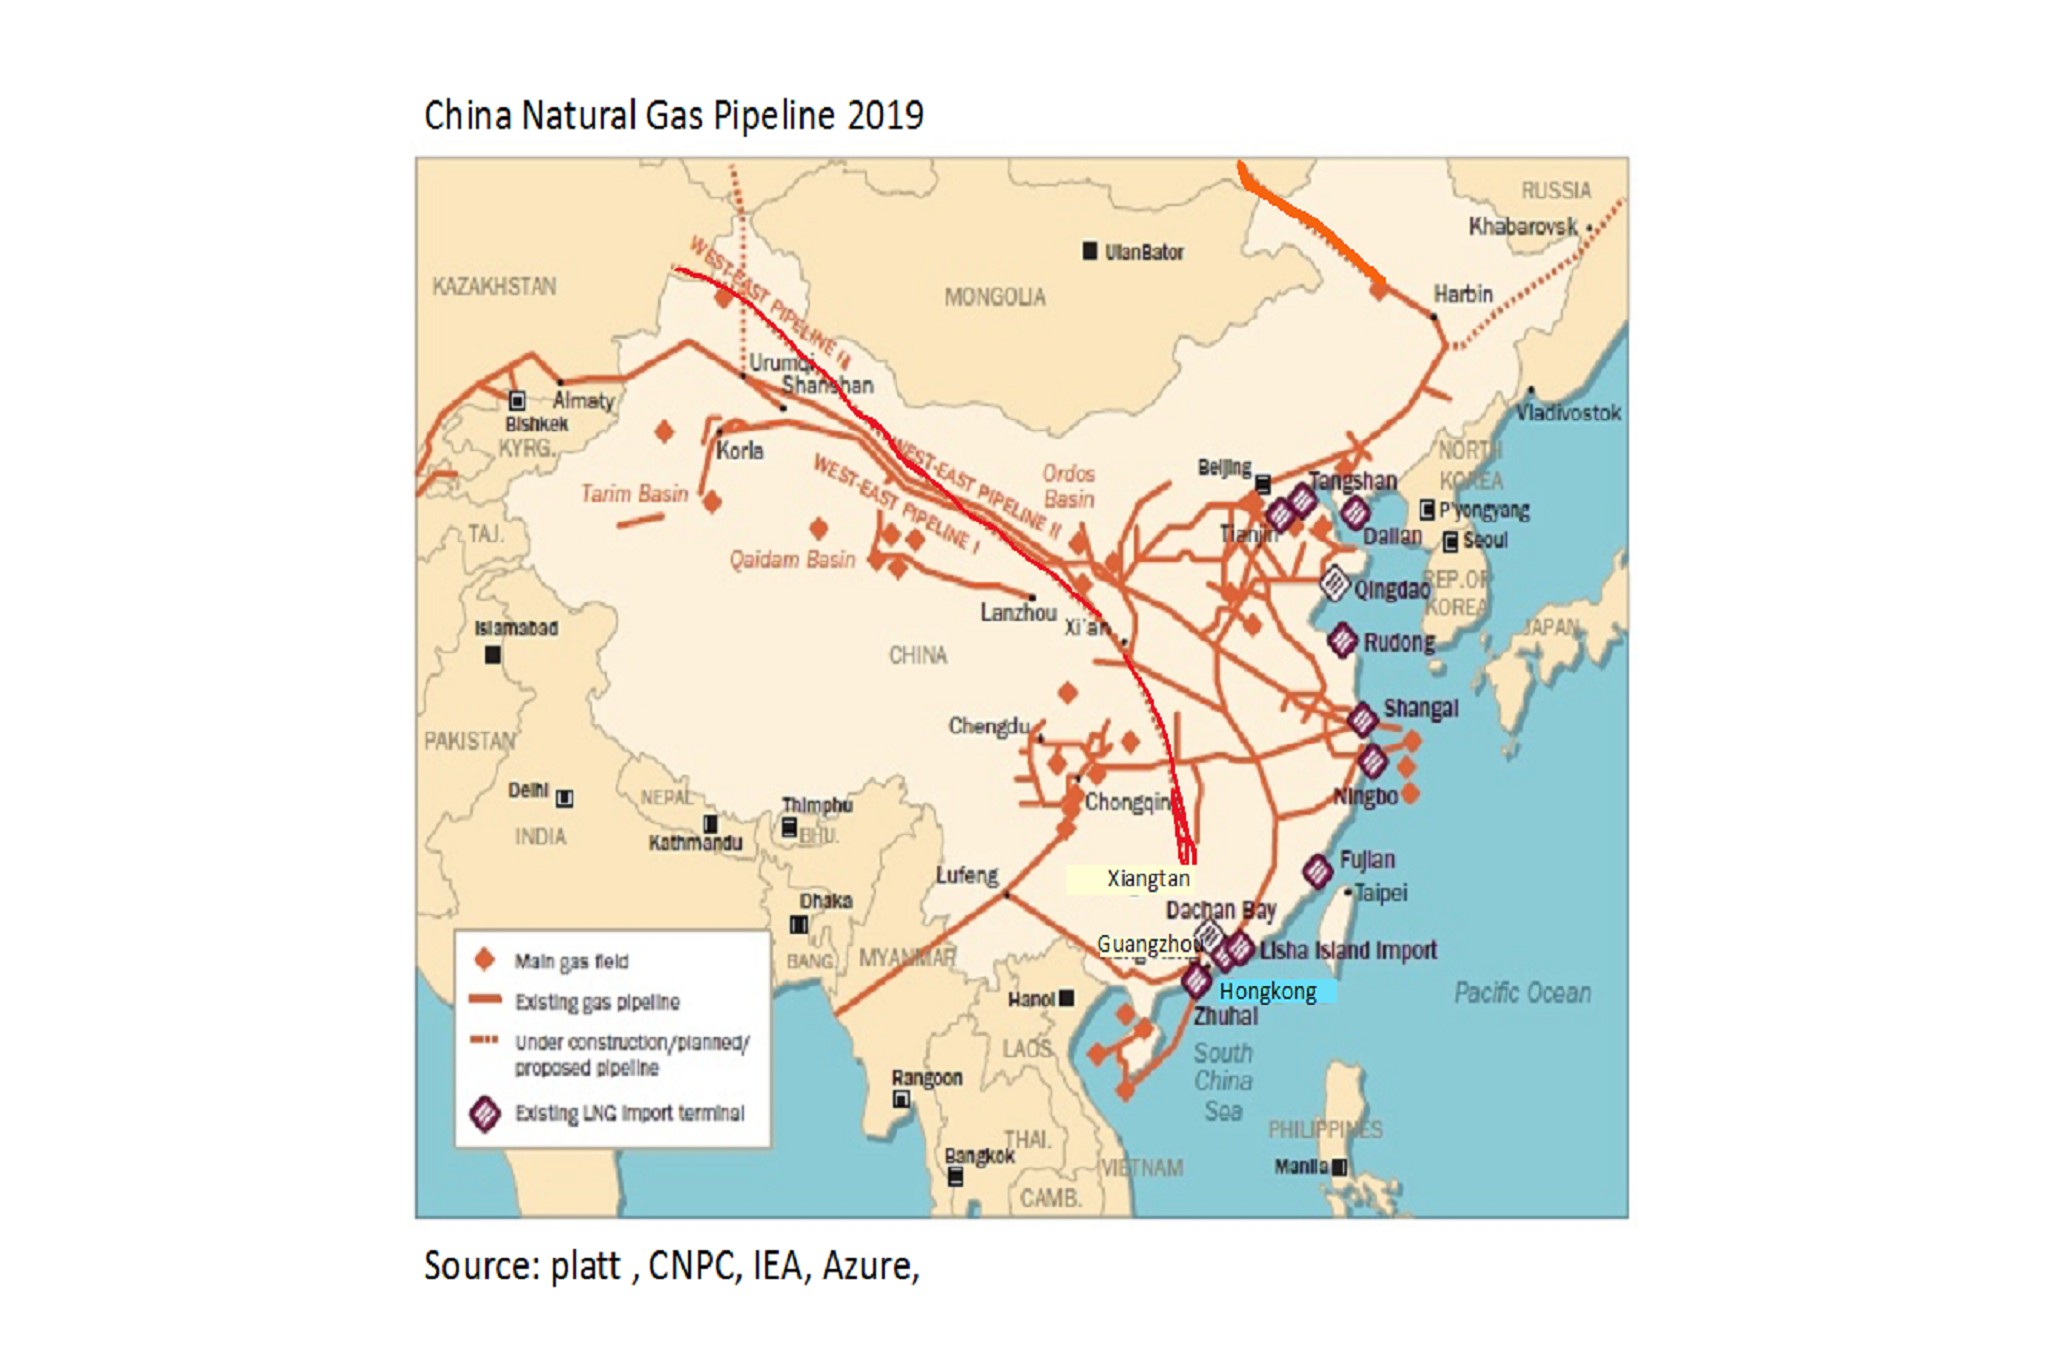 La Cina realizzerà una nuova rete di gasdotti lunga 34,2 chilometri - Pipeline News -  - News